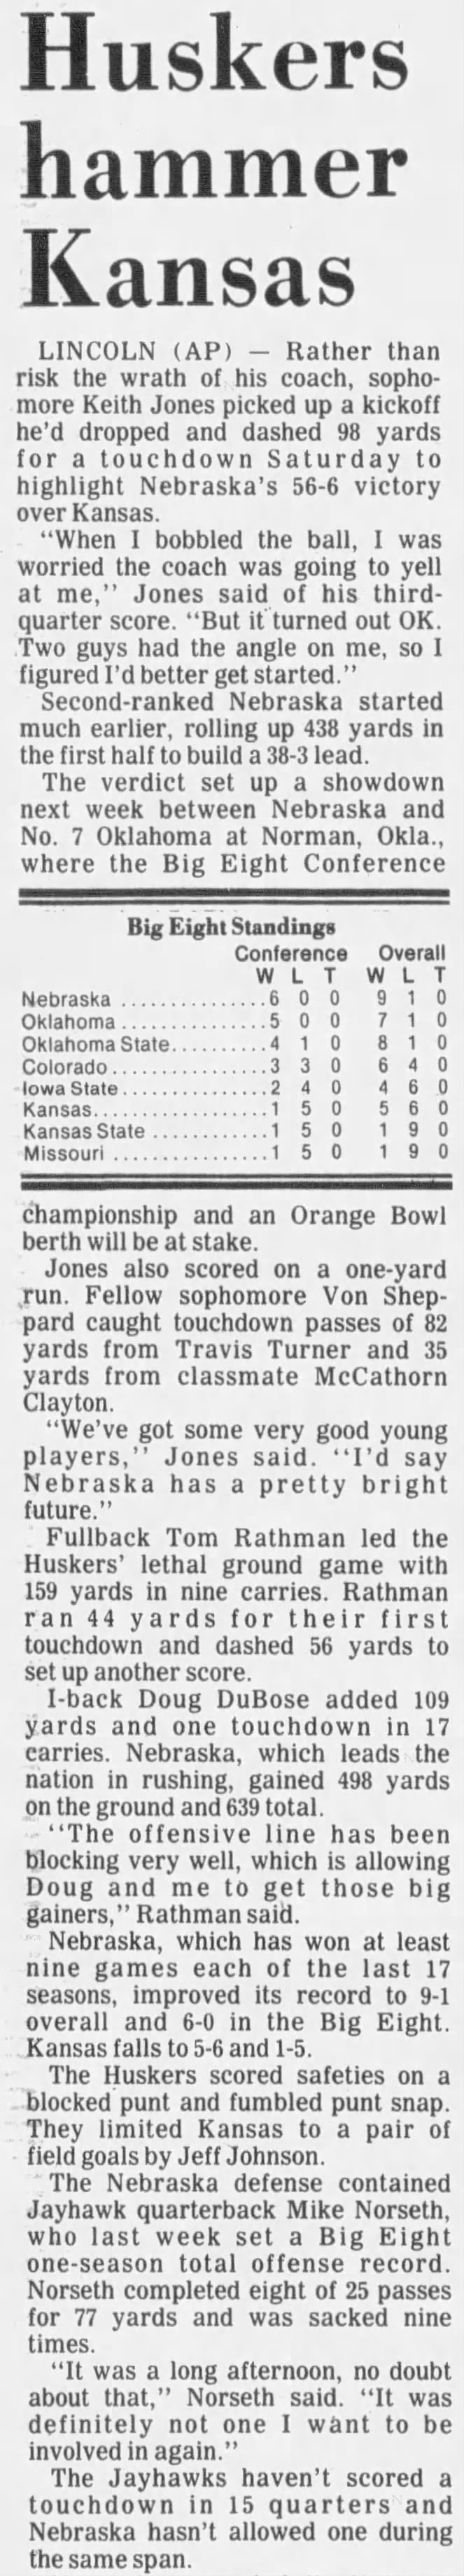 1985 Nebraska-Kansas football AP